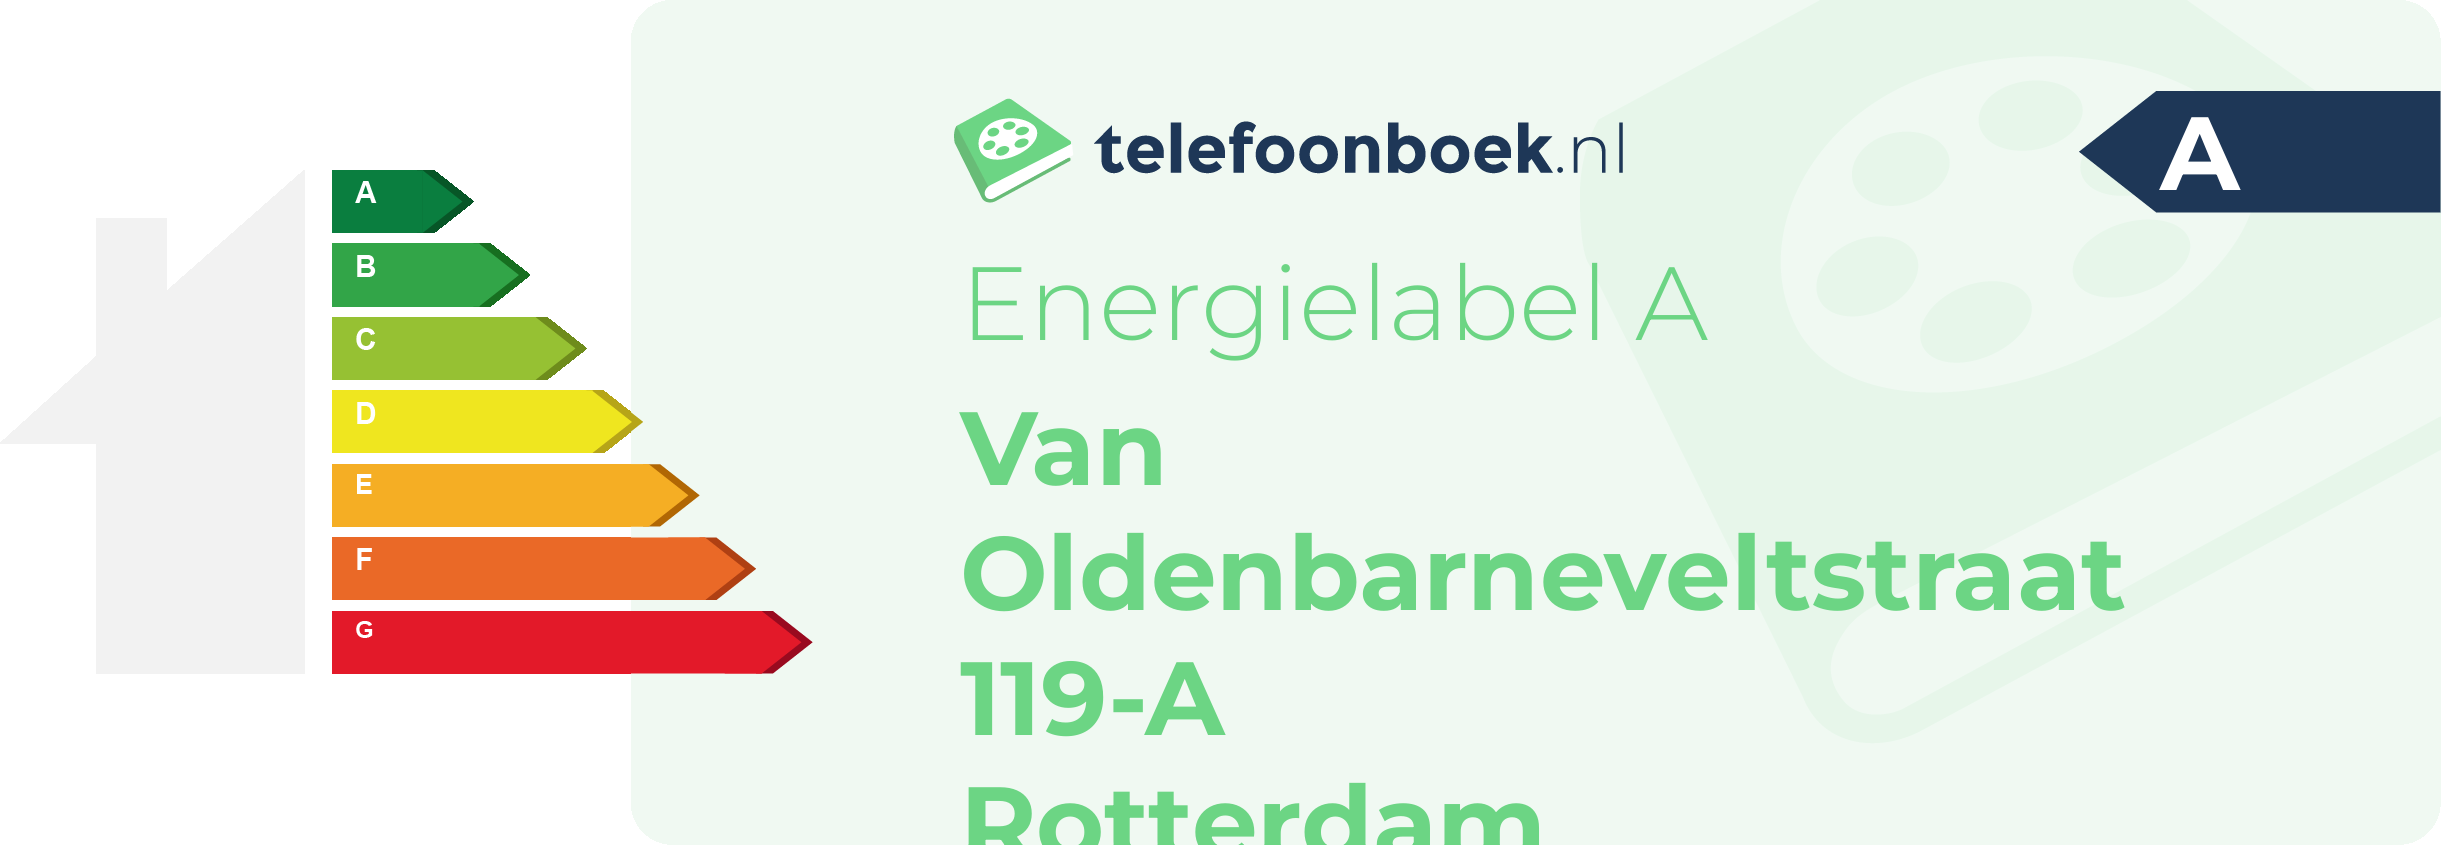 Energielabel Van Oldenbarneveltstraat 119-A Rotterdam